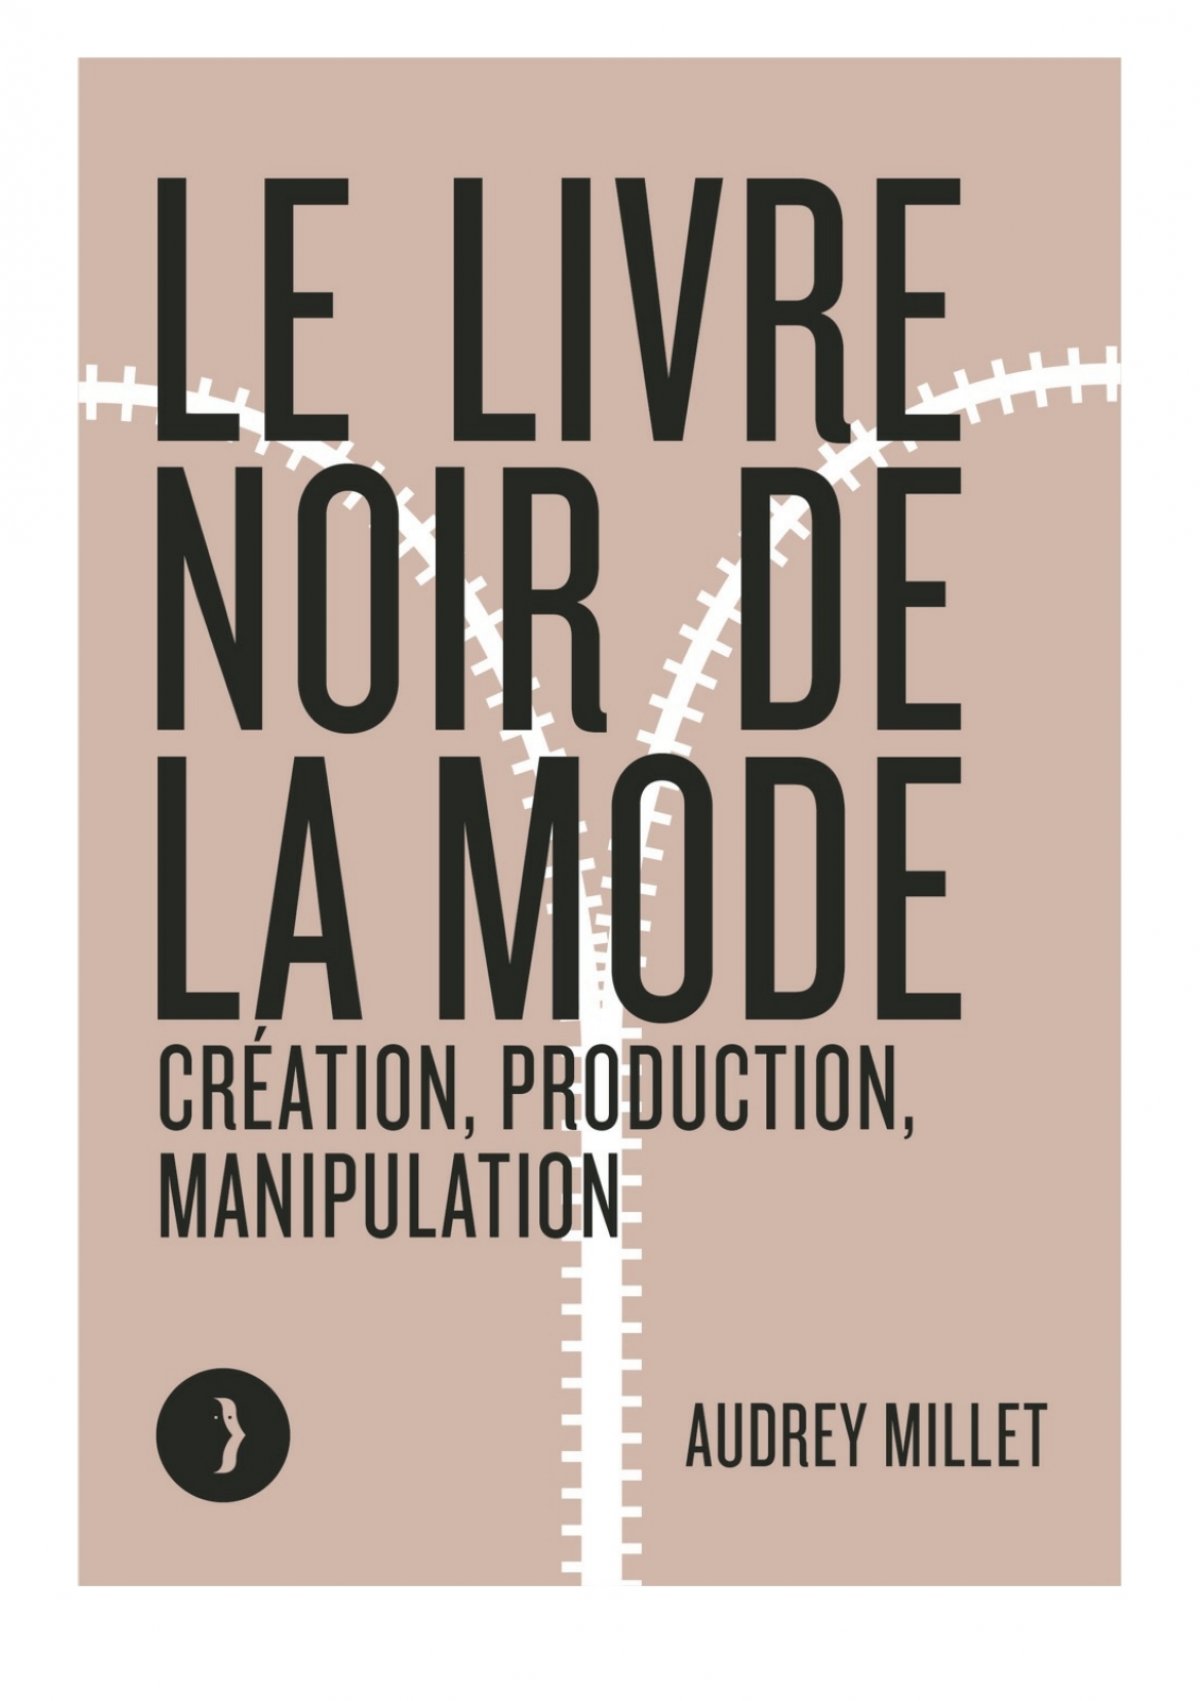 Le livre noir de la mode - Création, production, manipulatio by Audrey  Millet